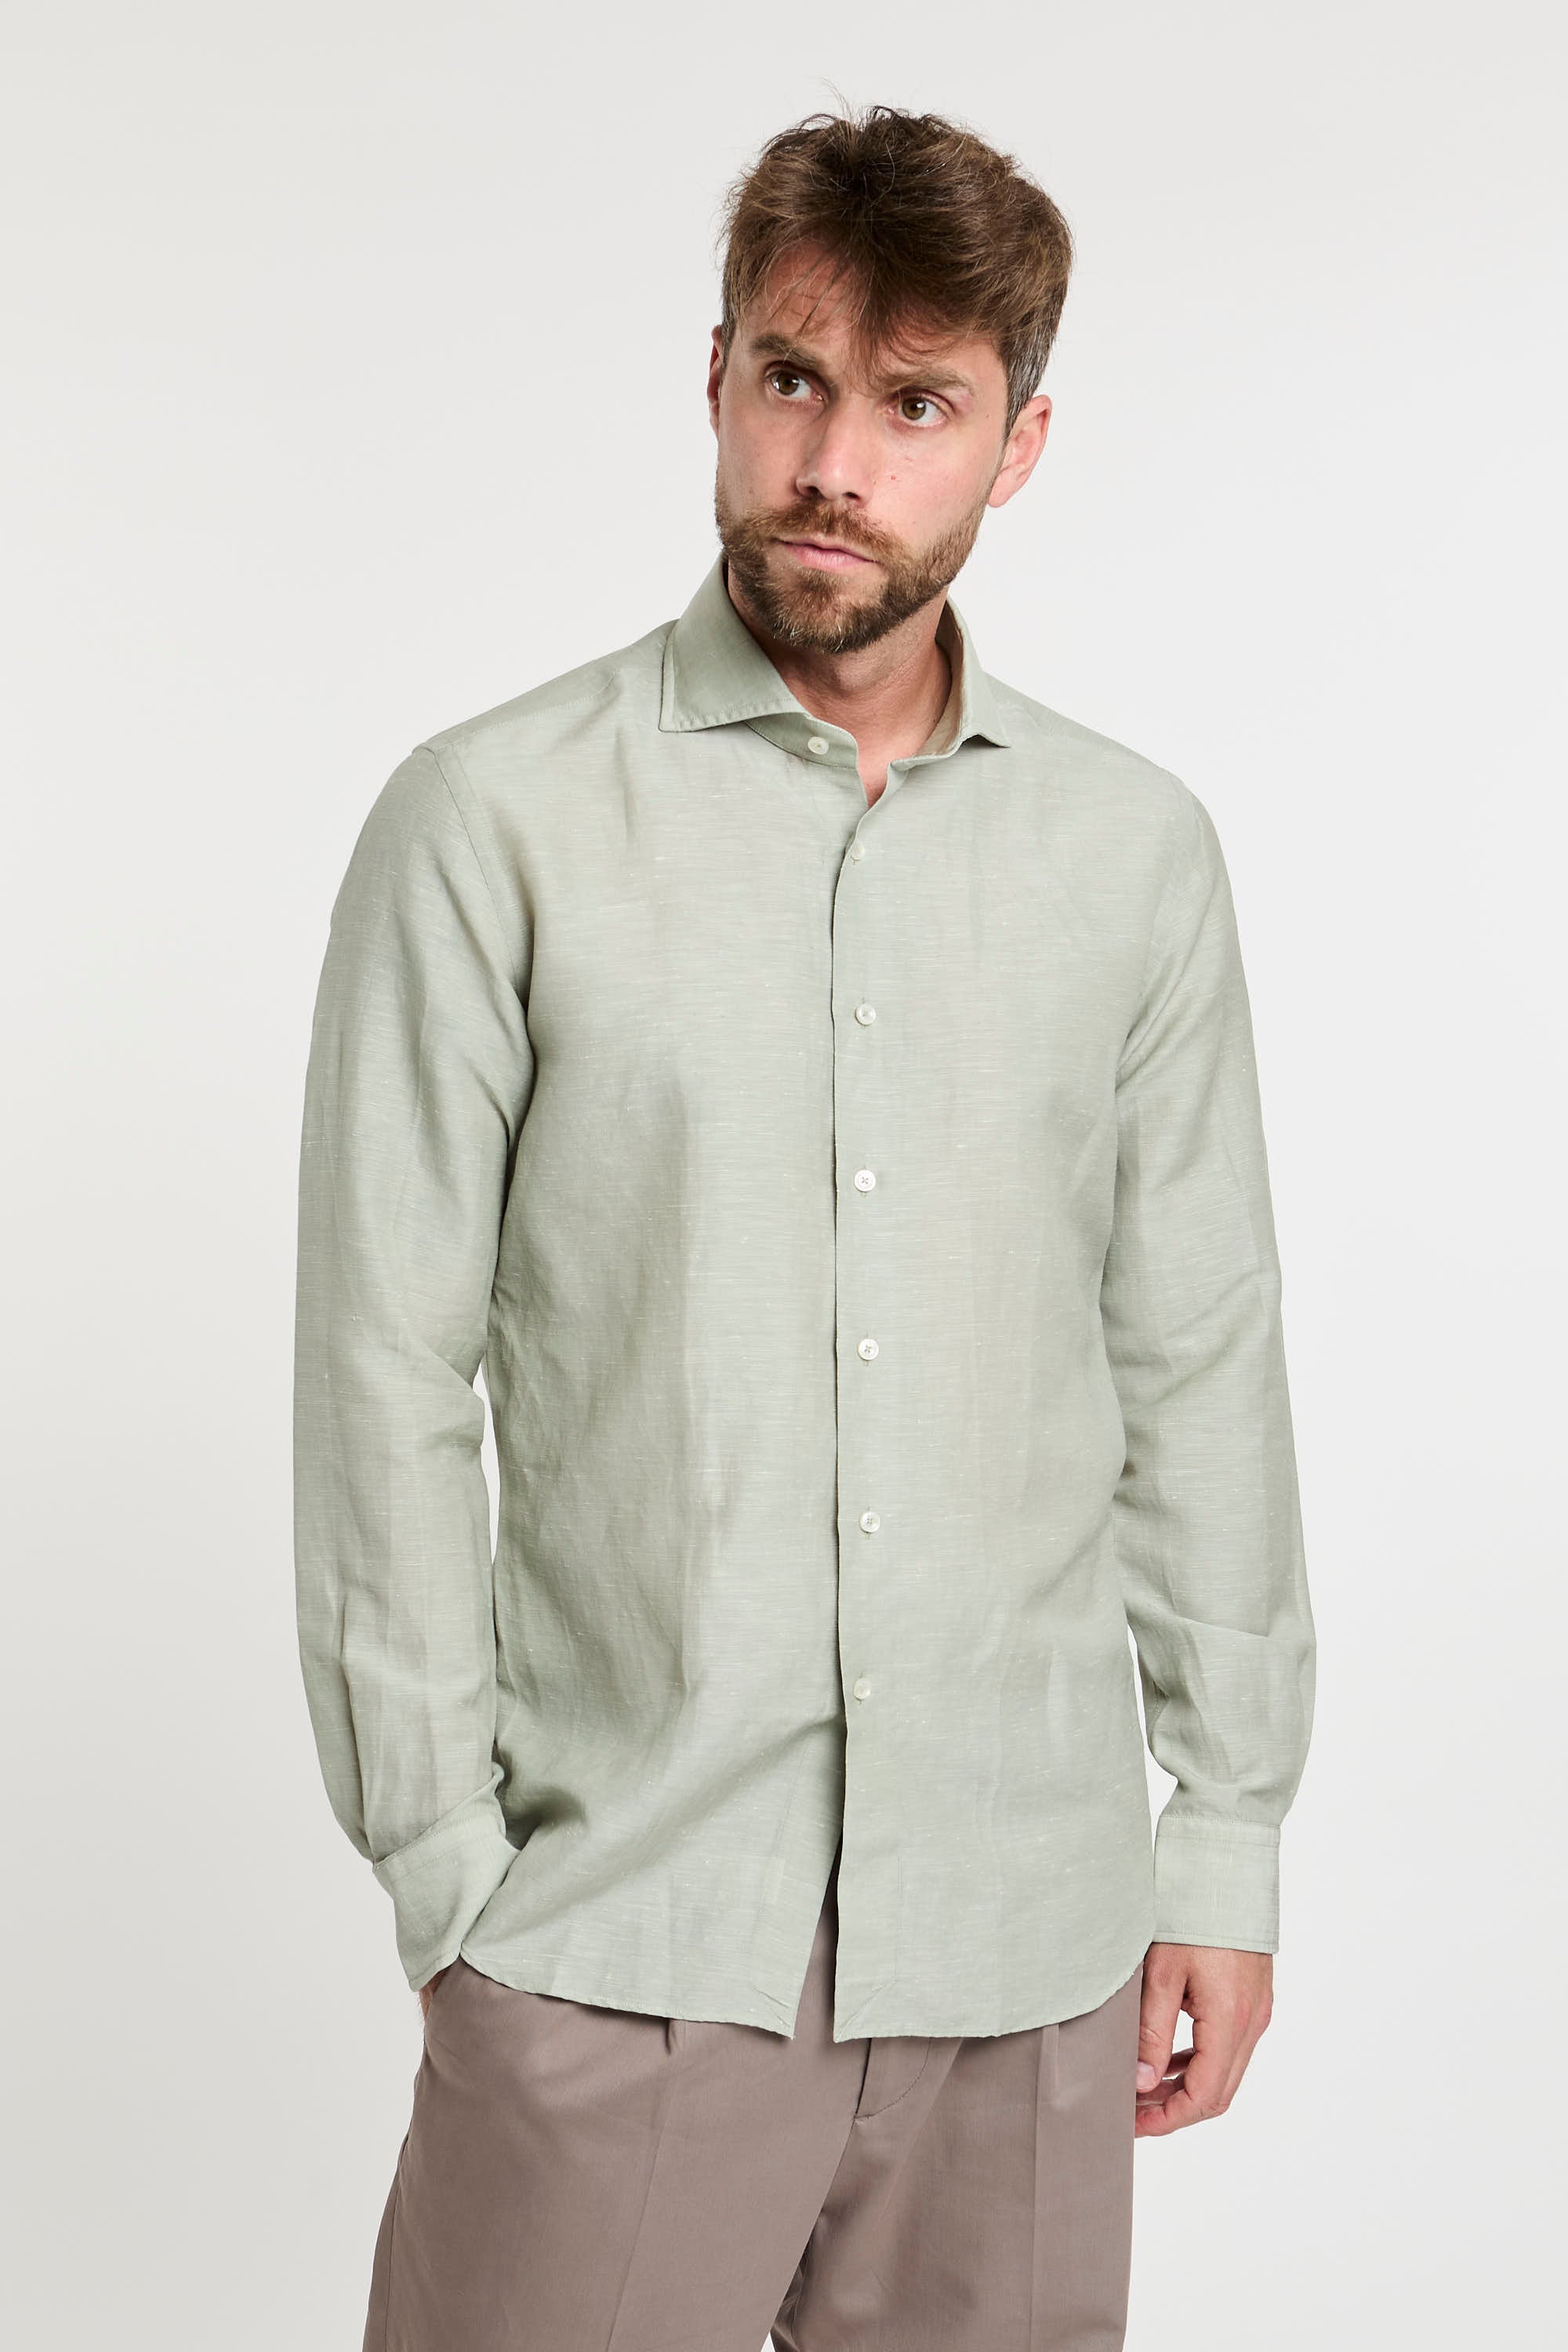 Xacus Wool and Linen Blend Green Shirt-5